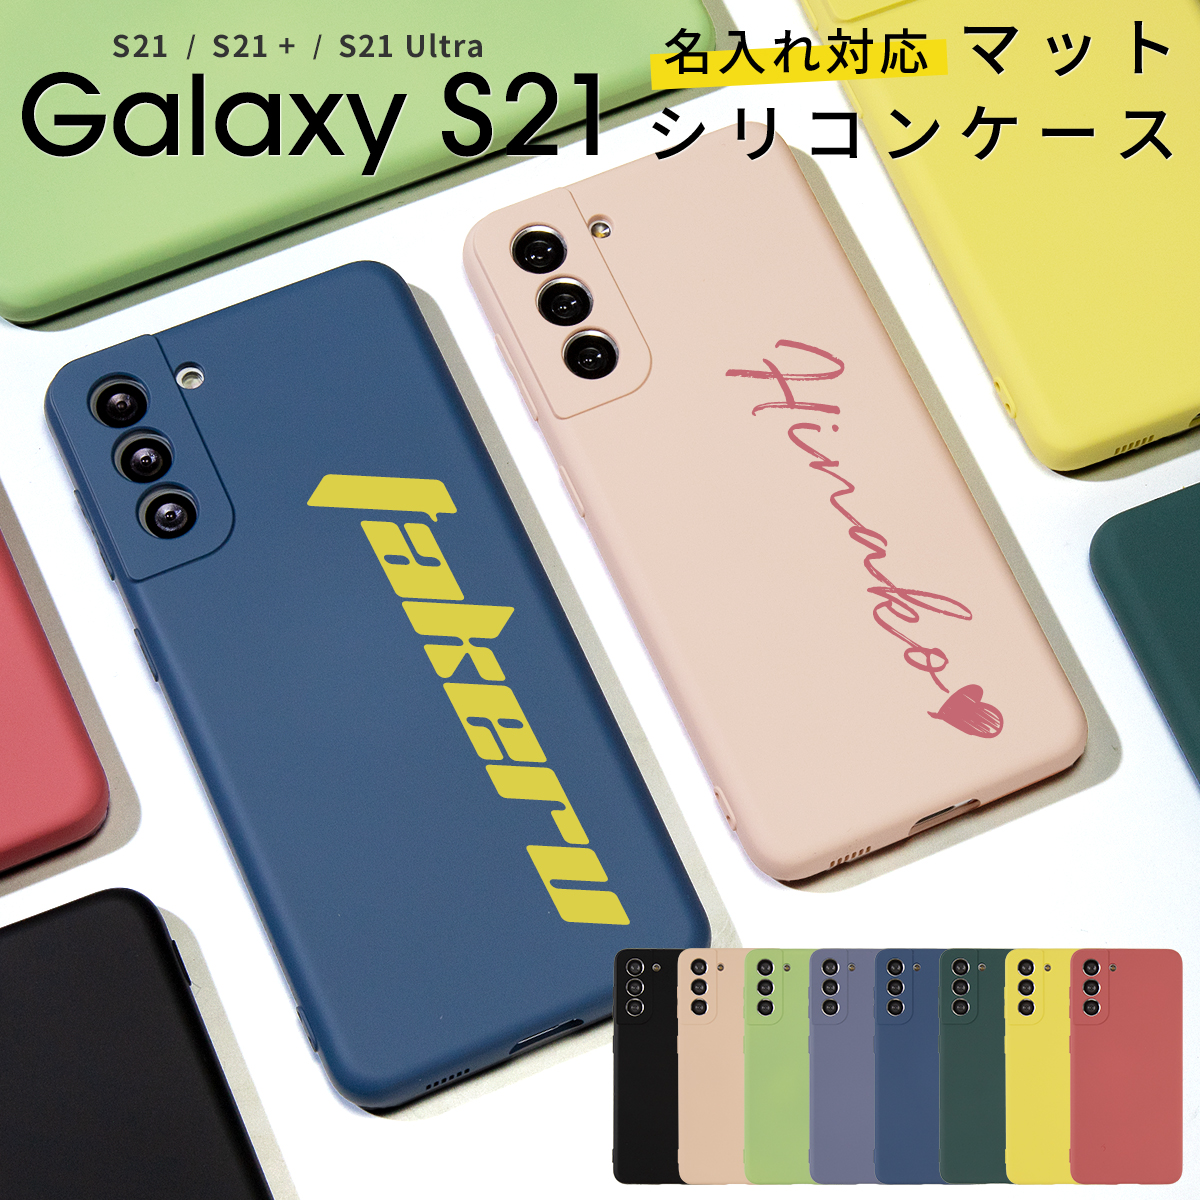 Galaxy S21 ケース ライトブルー 携帯カバー 正規品送料無料 - Android